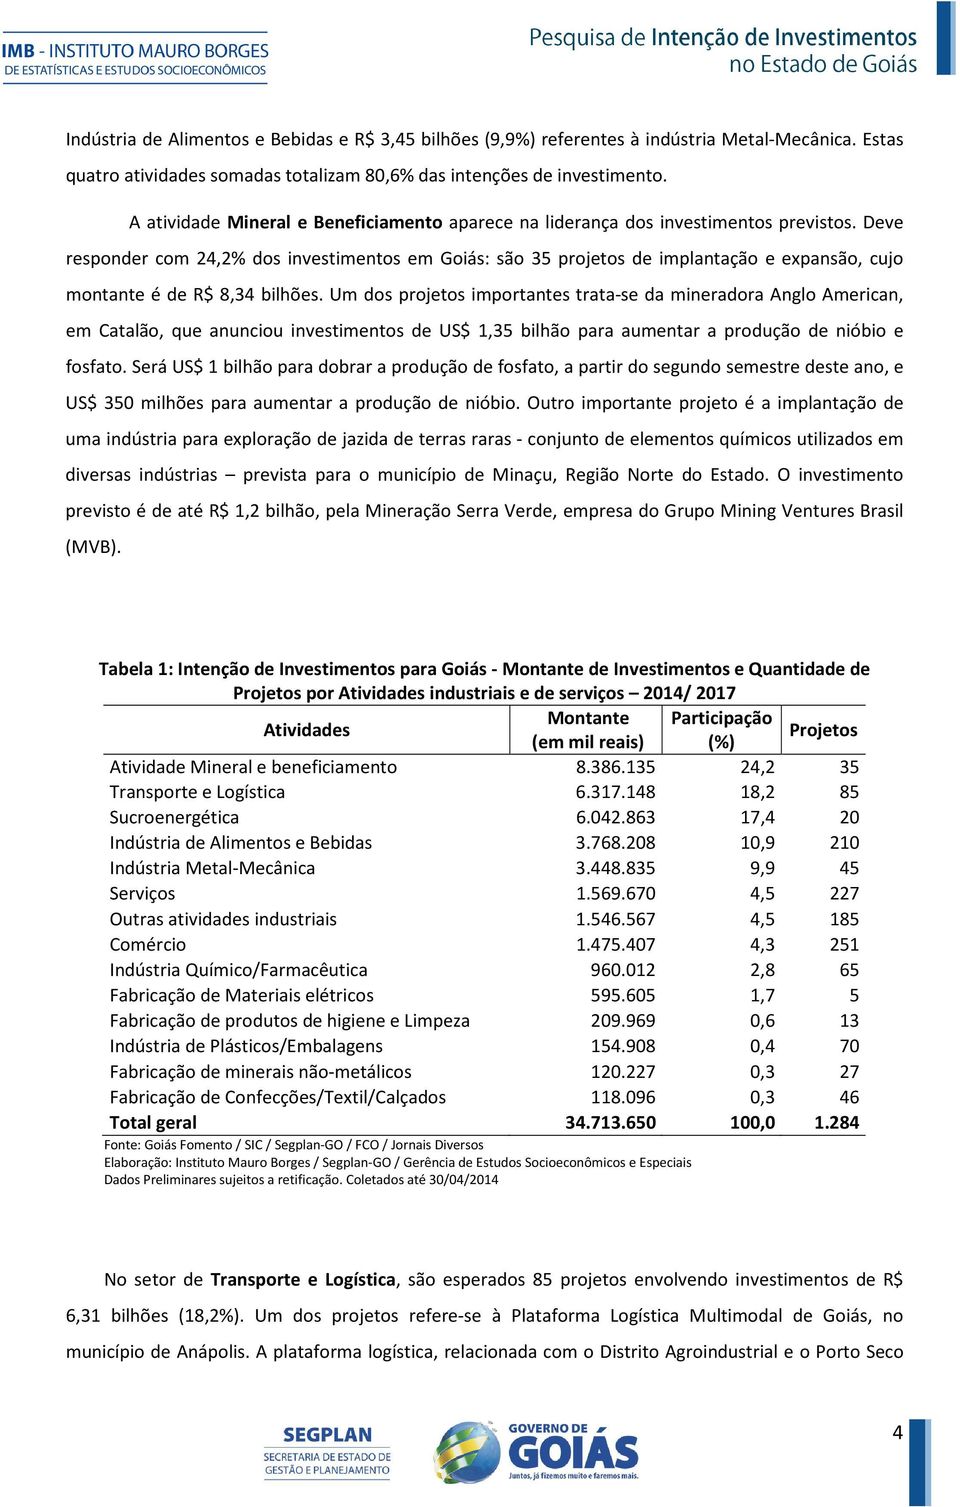 Deve responder com 24,2% dos investimentos em Goiás: são 35 projetos de implantação e expansão, cujo montante é de R$ 8,34 bilhões.